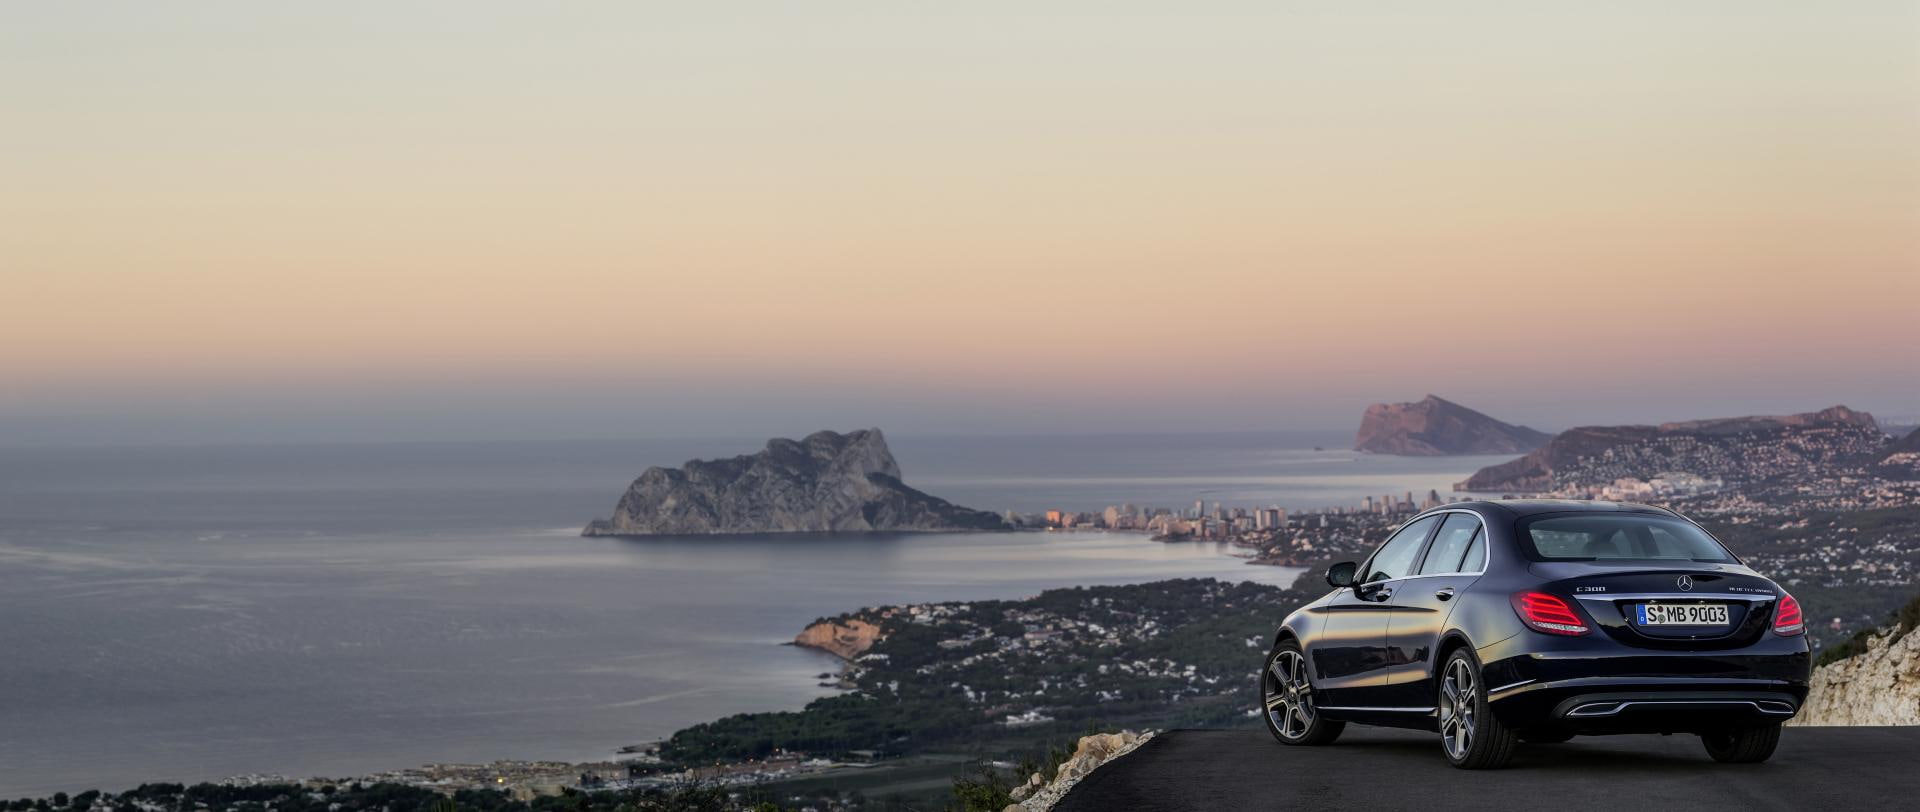 Mercedes-Benz C300, 2015_mercedes benz c class, car, sea, sky